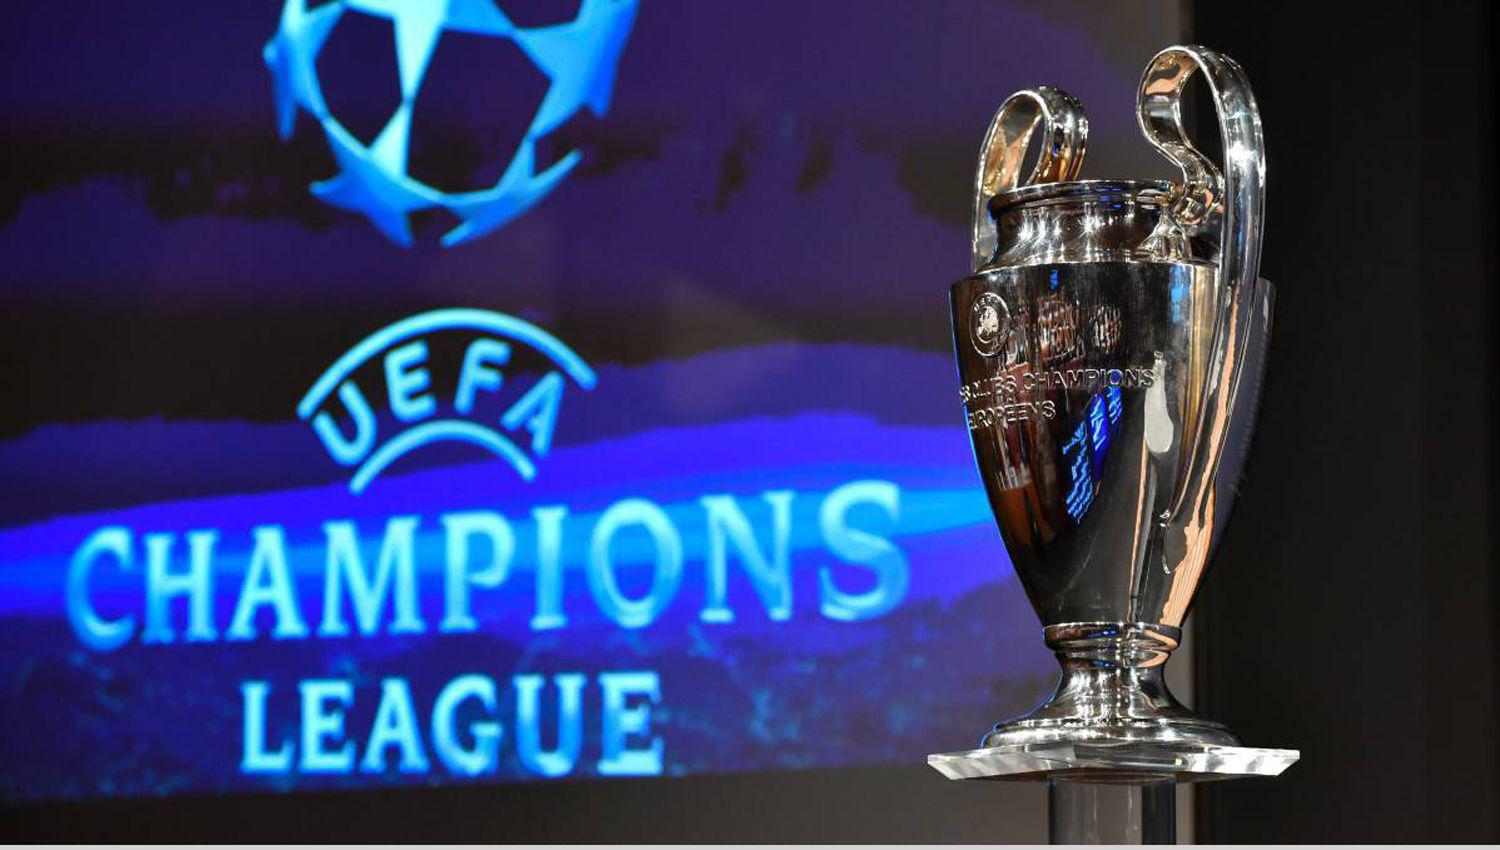 La final de la Liga de Campeones seriacutea el 29 de agosto en Estambul